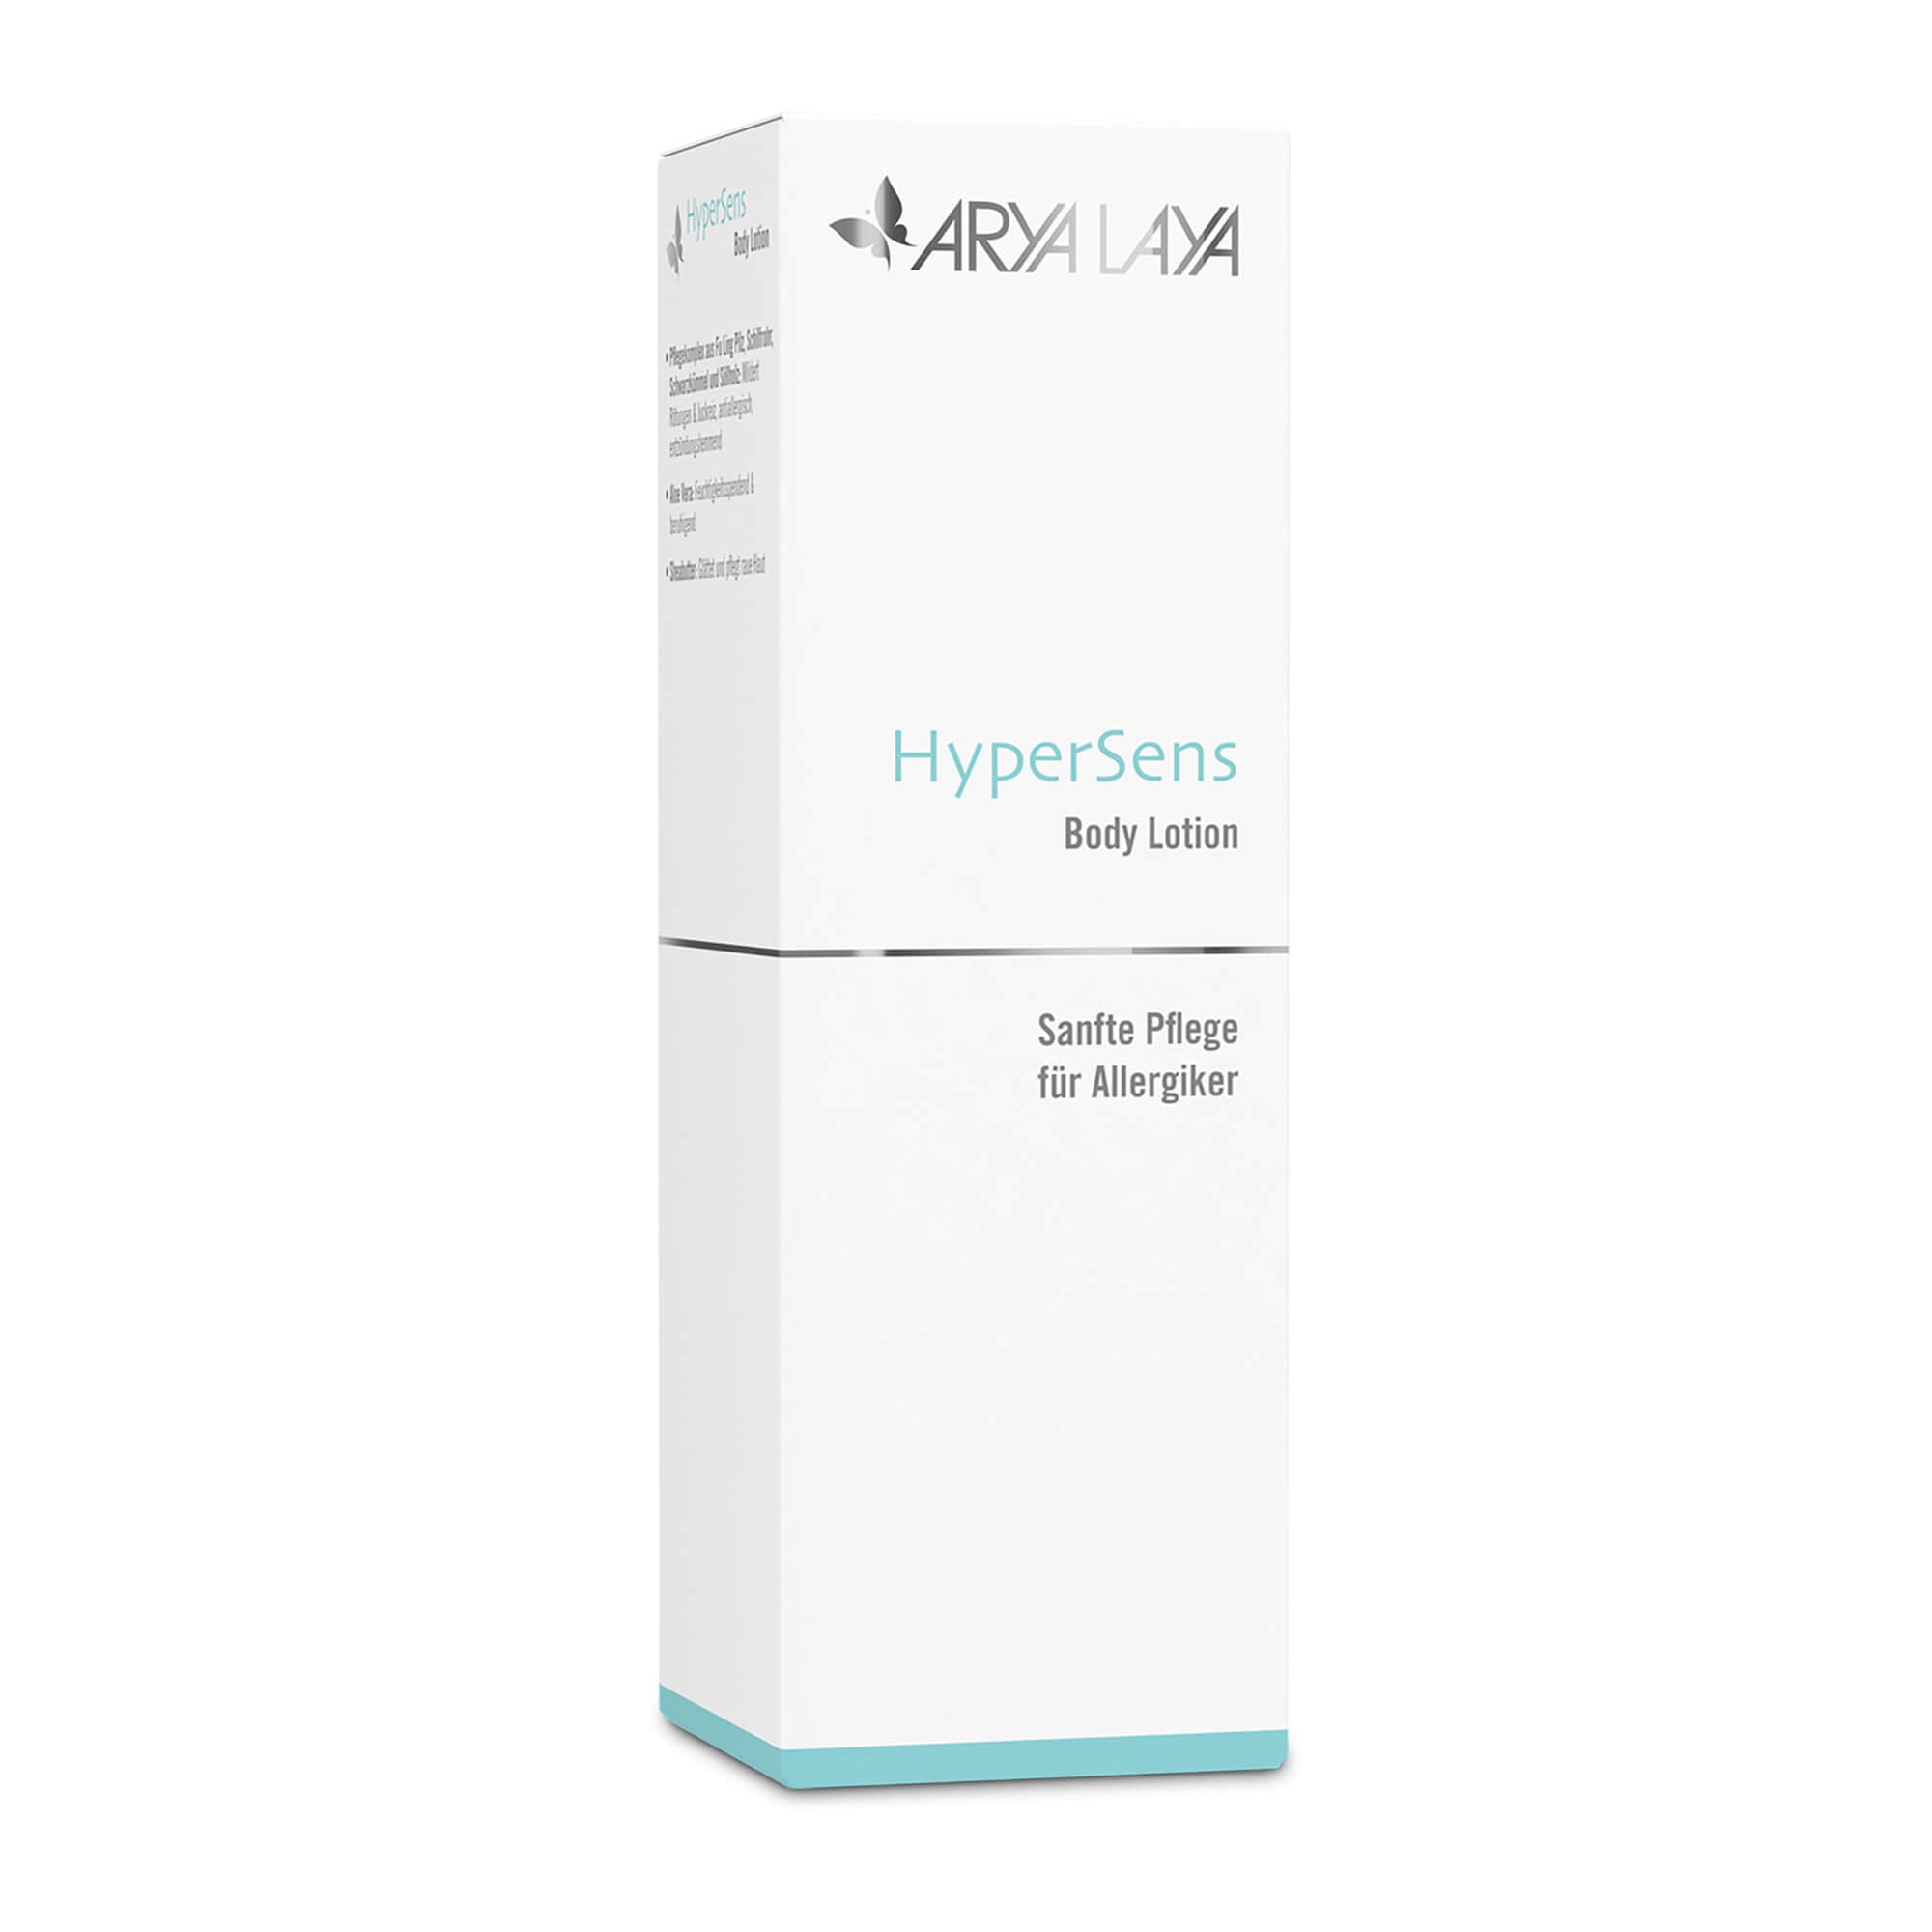 Hypersens Body Lotion, sanfte Pflege für Allergiker mit Schwarzkümmelöl, beruhigt und fördert die Regeneration, 150 ml  Faltschachtel